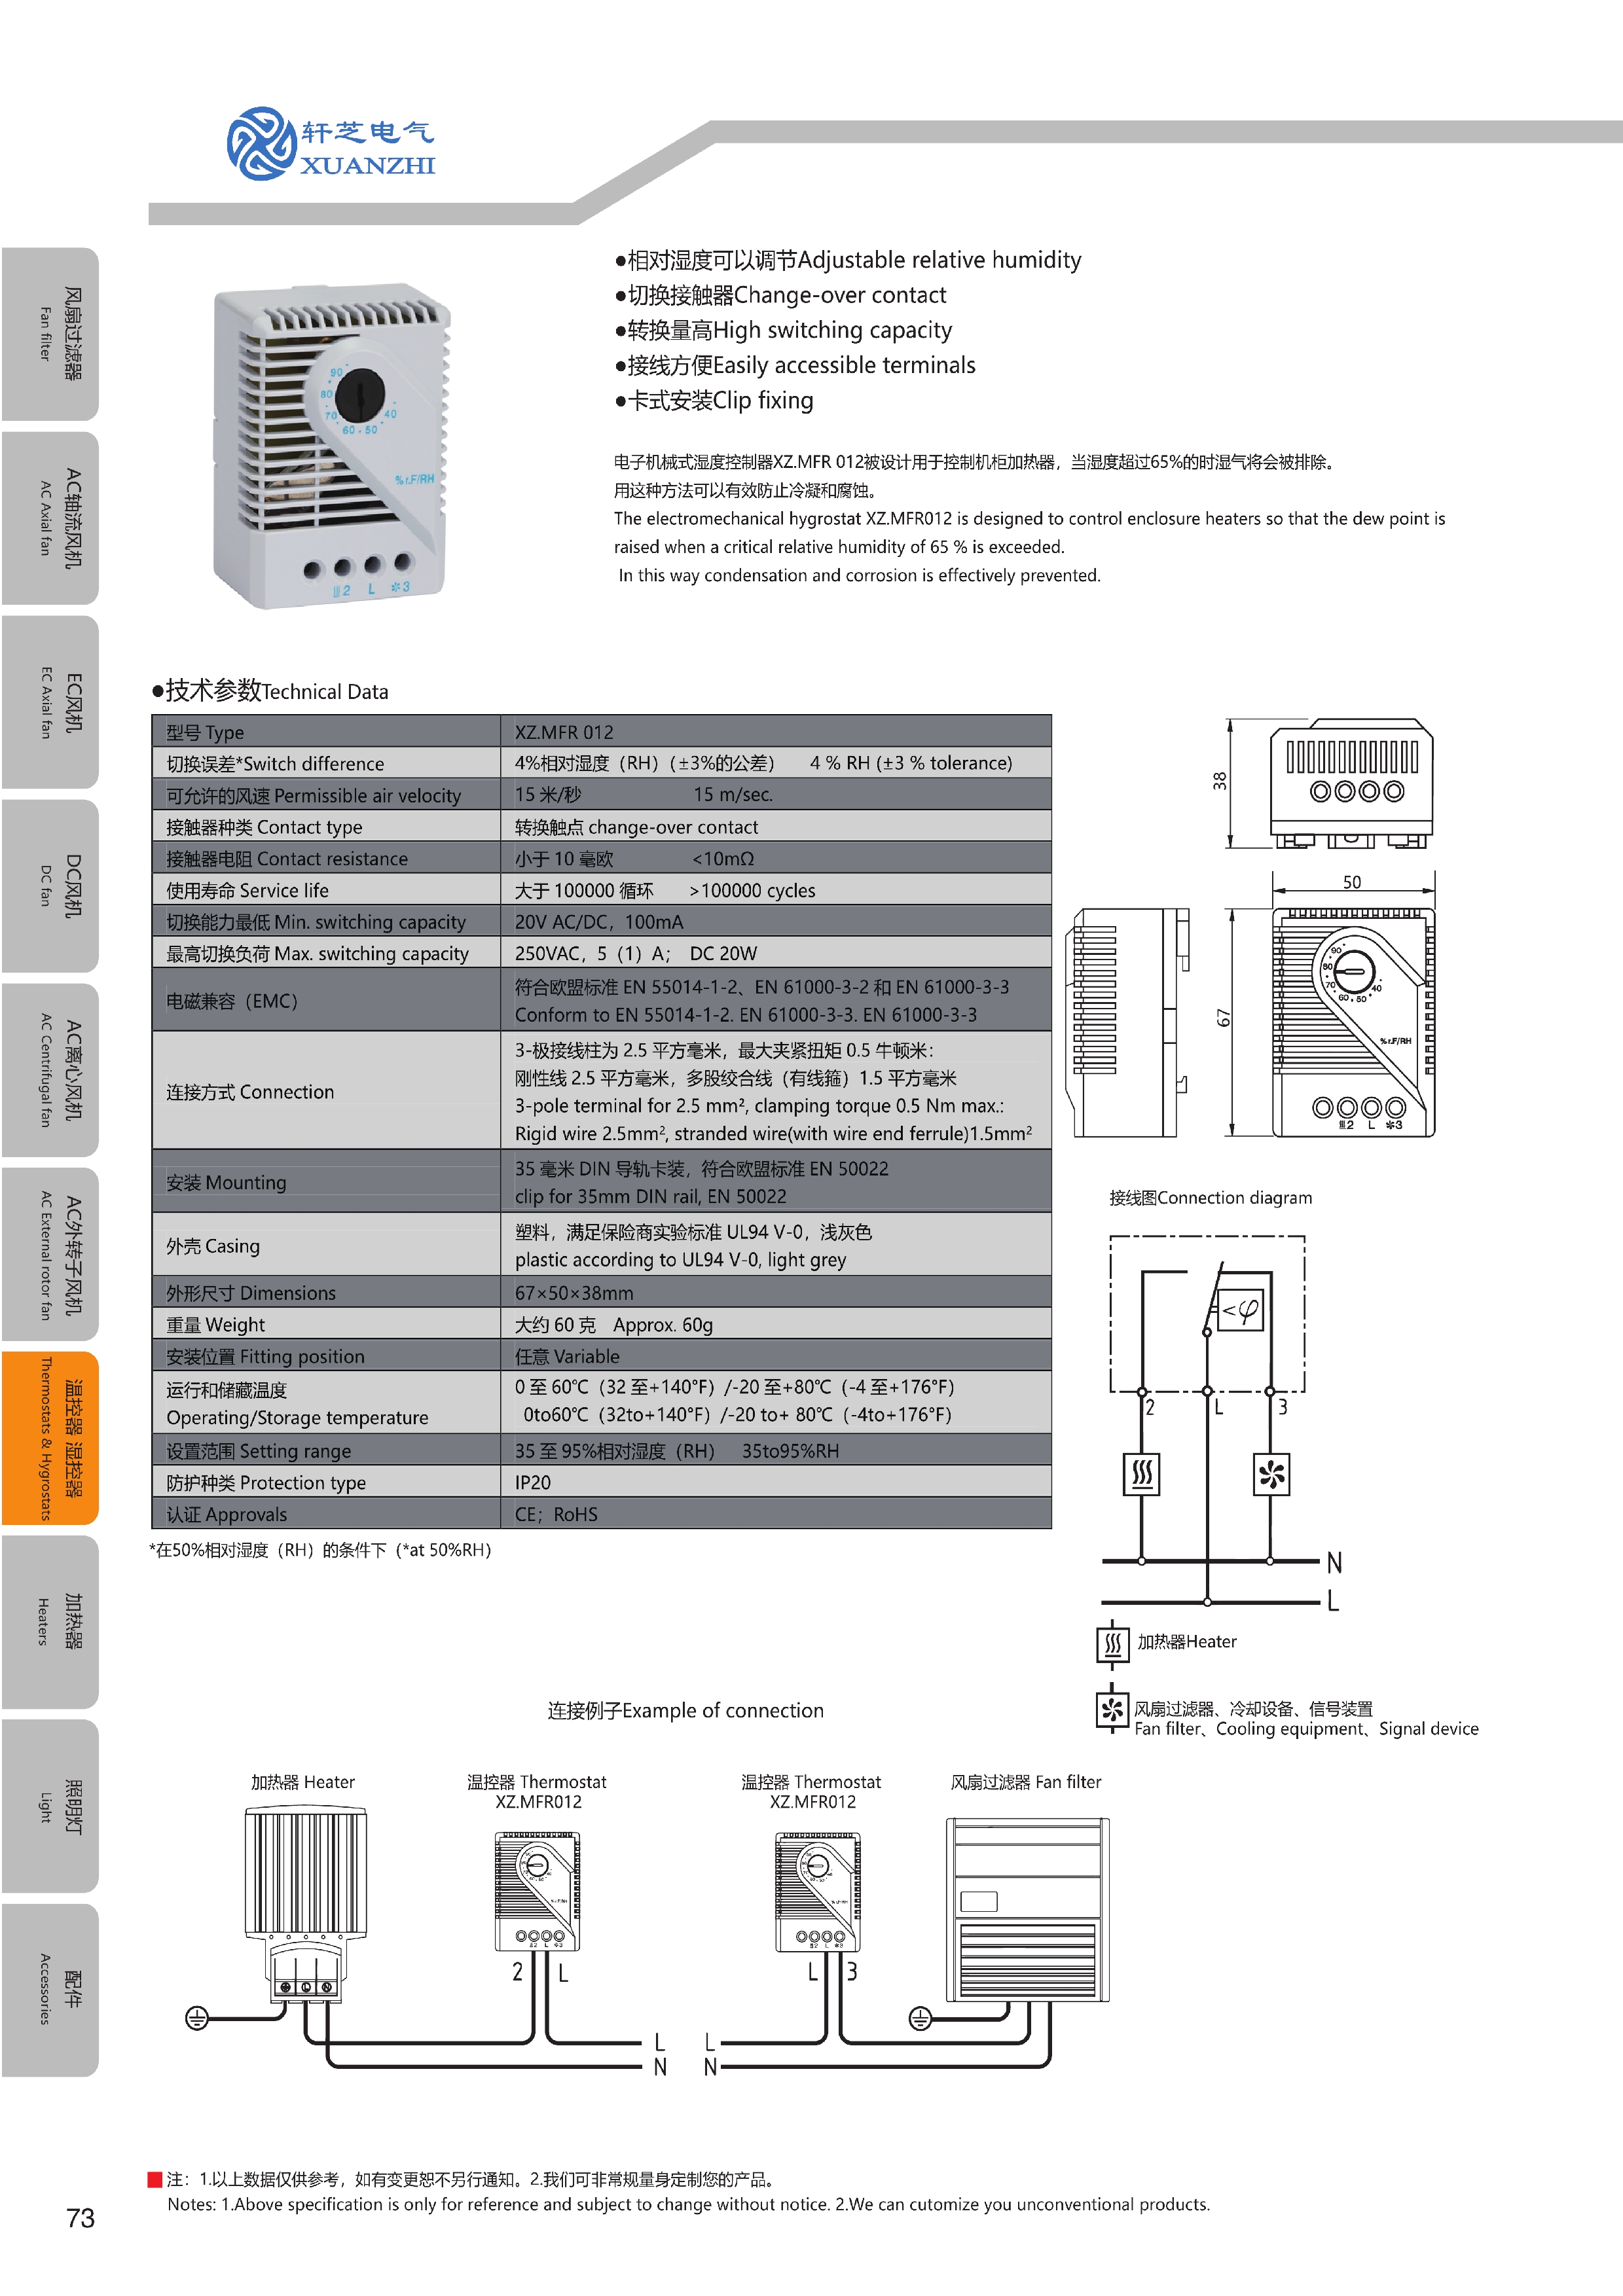 073-074-温控器MFR012-FZK011_split_10000.jpg